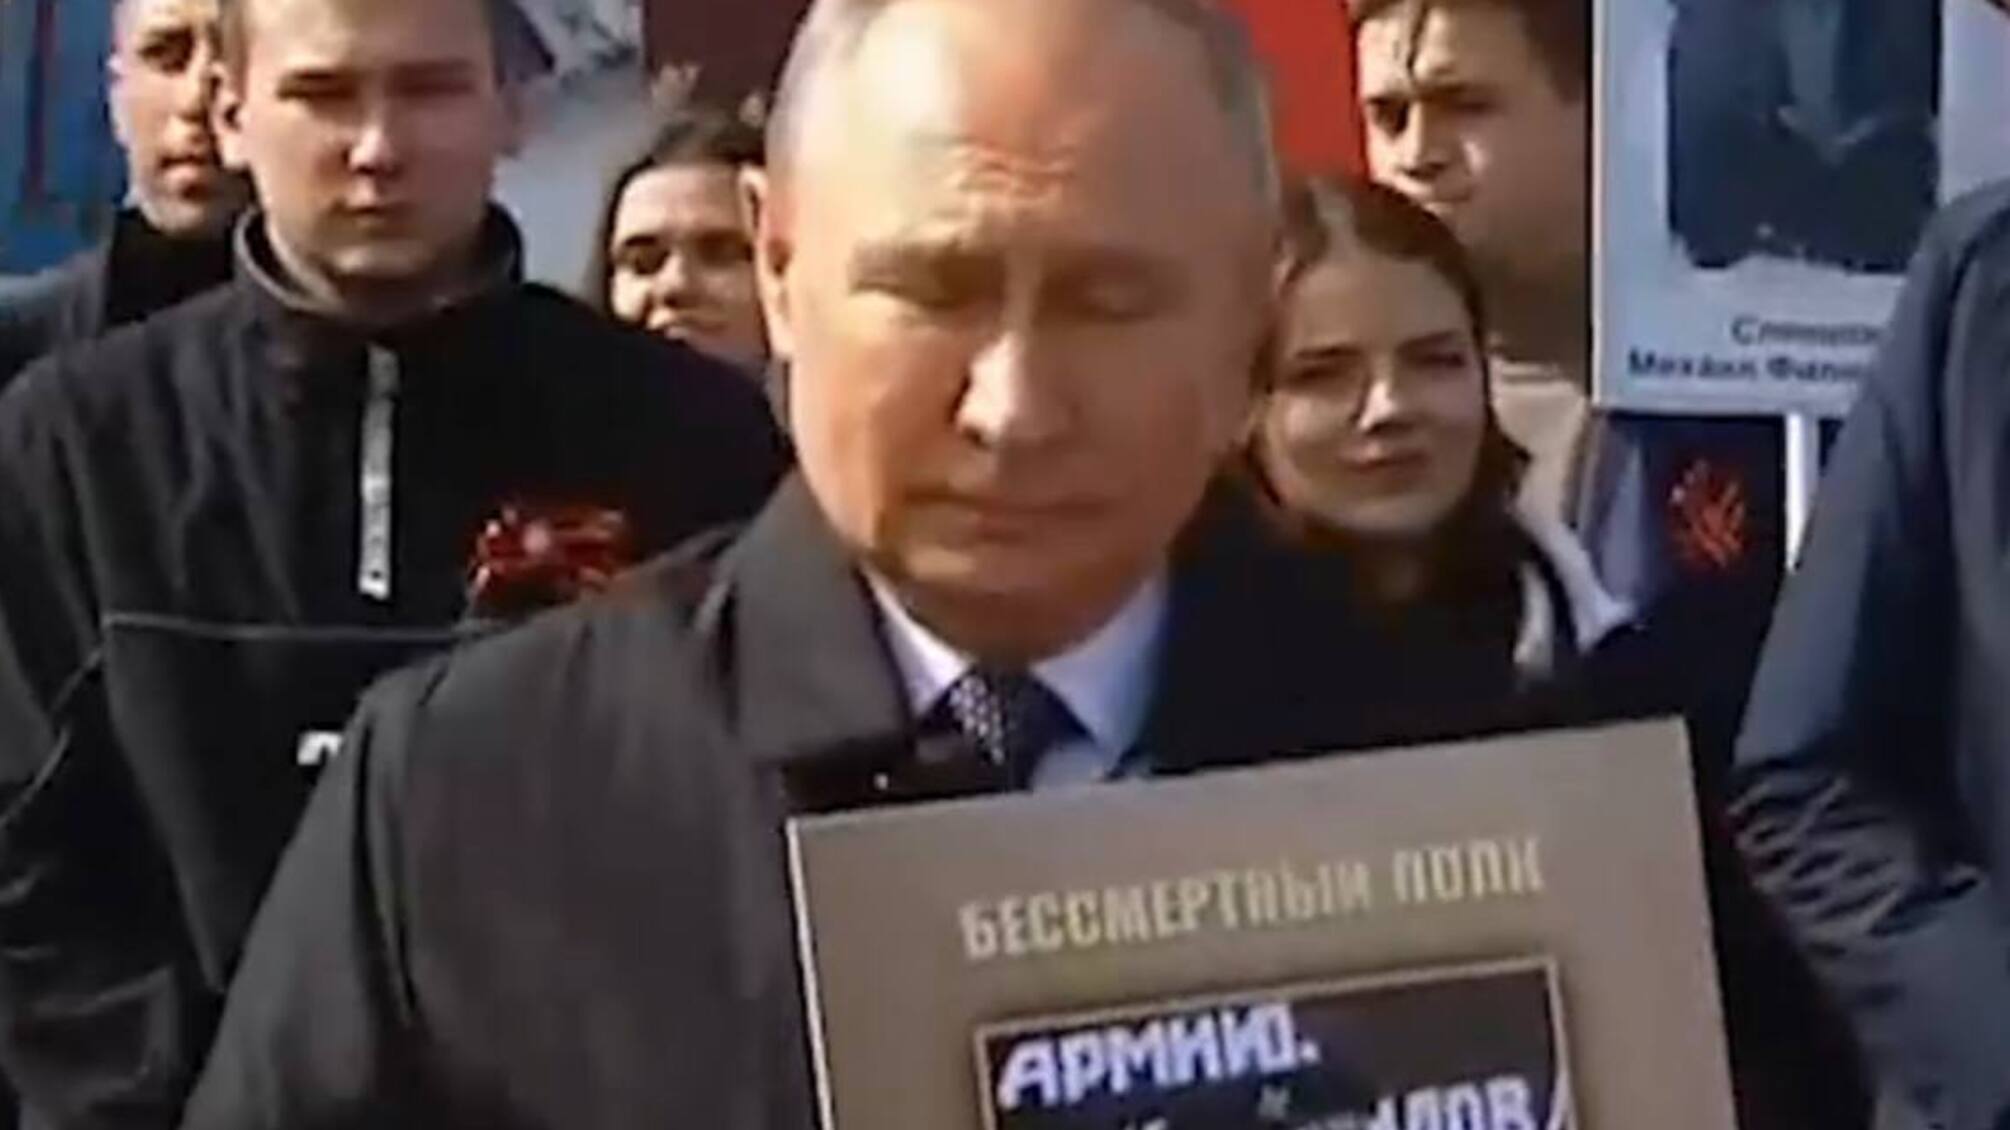 Путин принял участие в ходе ''Бессмертного полка'': нес портрет якобы отца